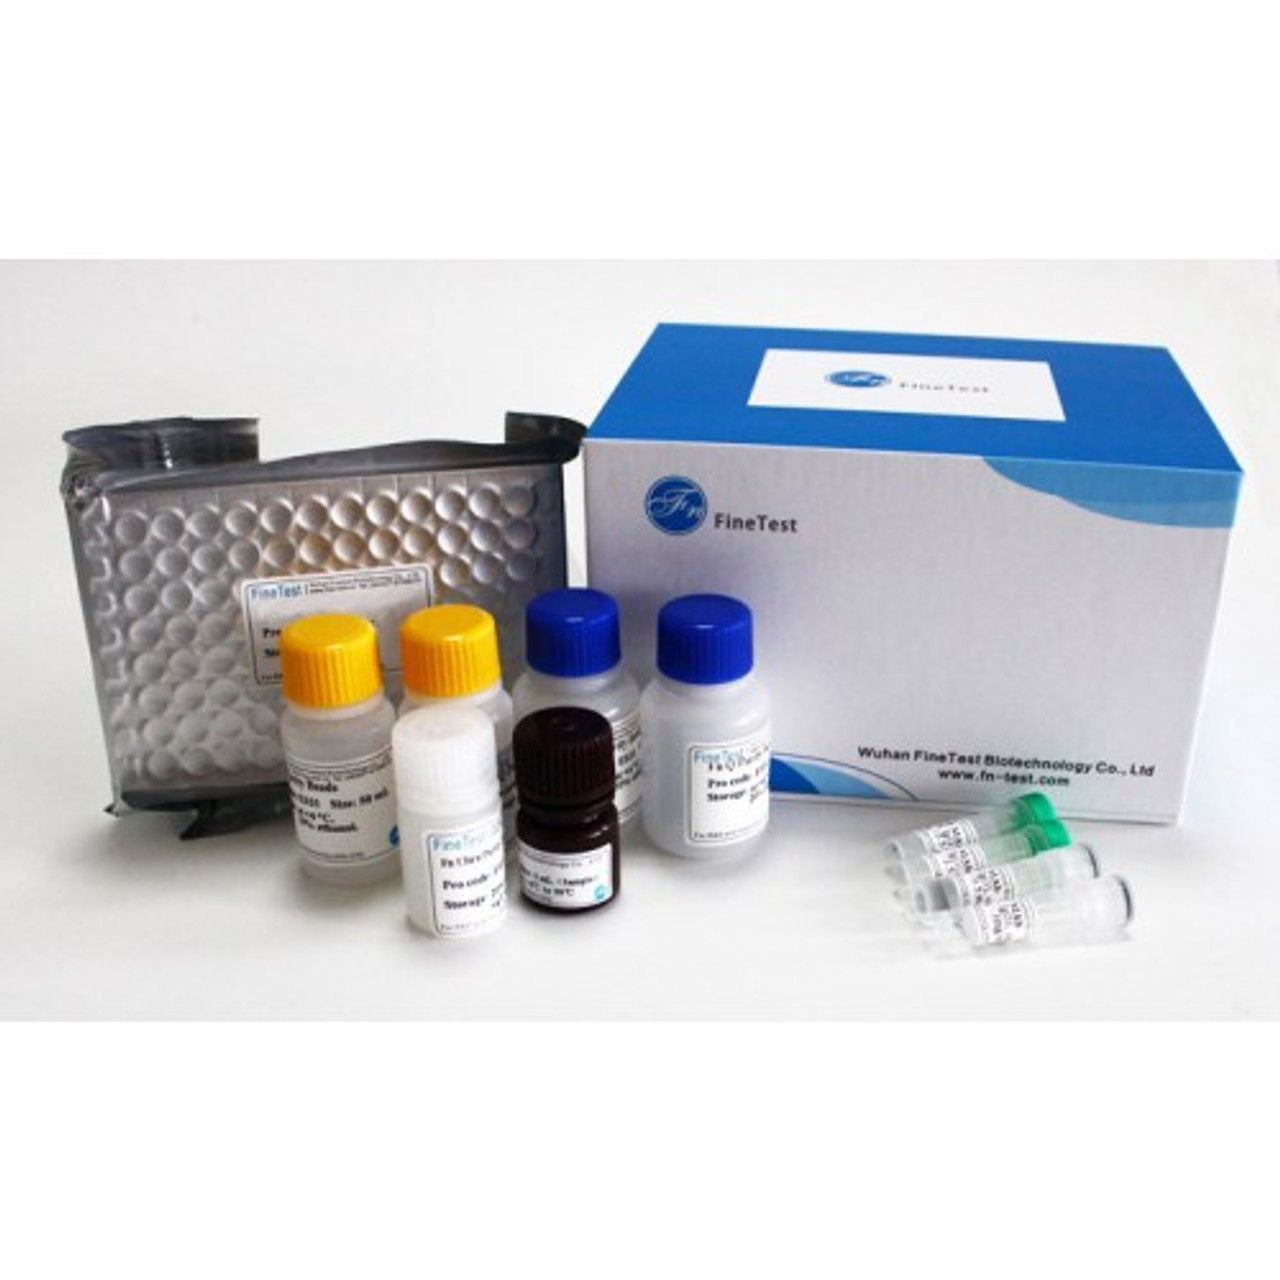 Sheep IgG1(Immunoglobulin G1) ELISA Kit